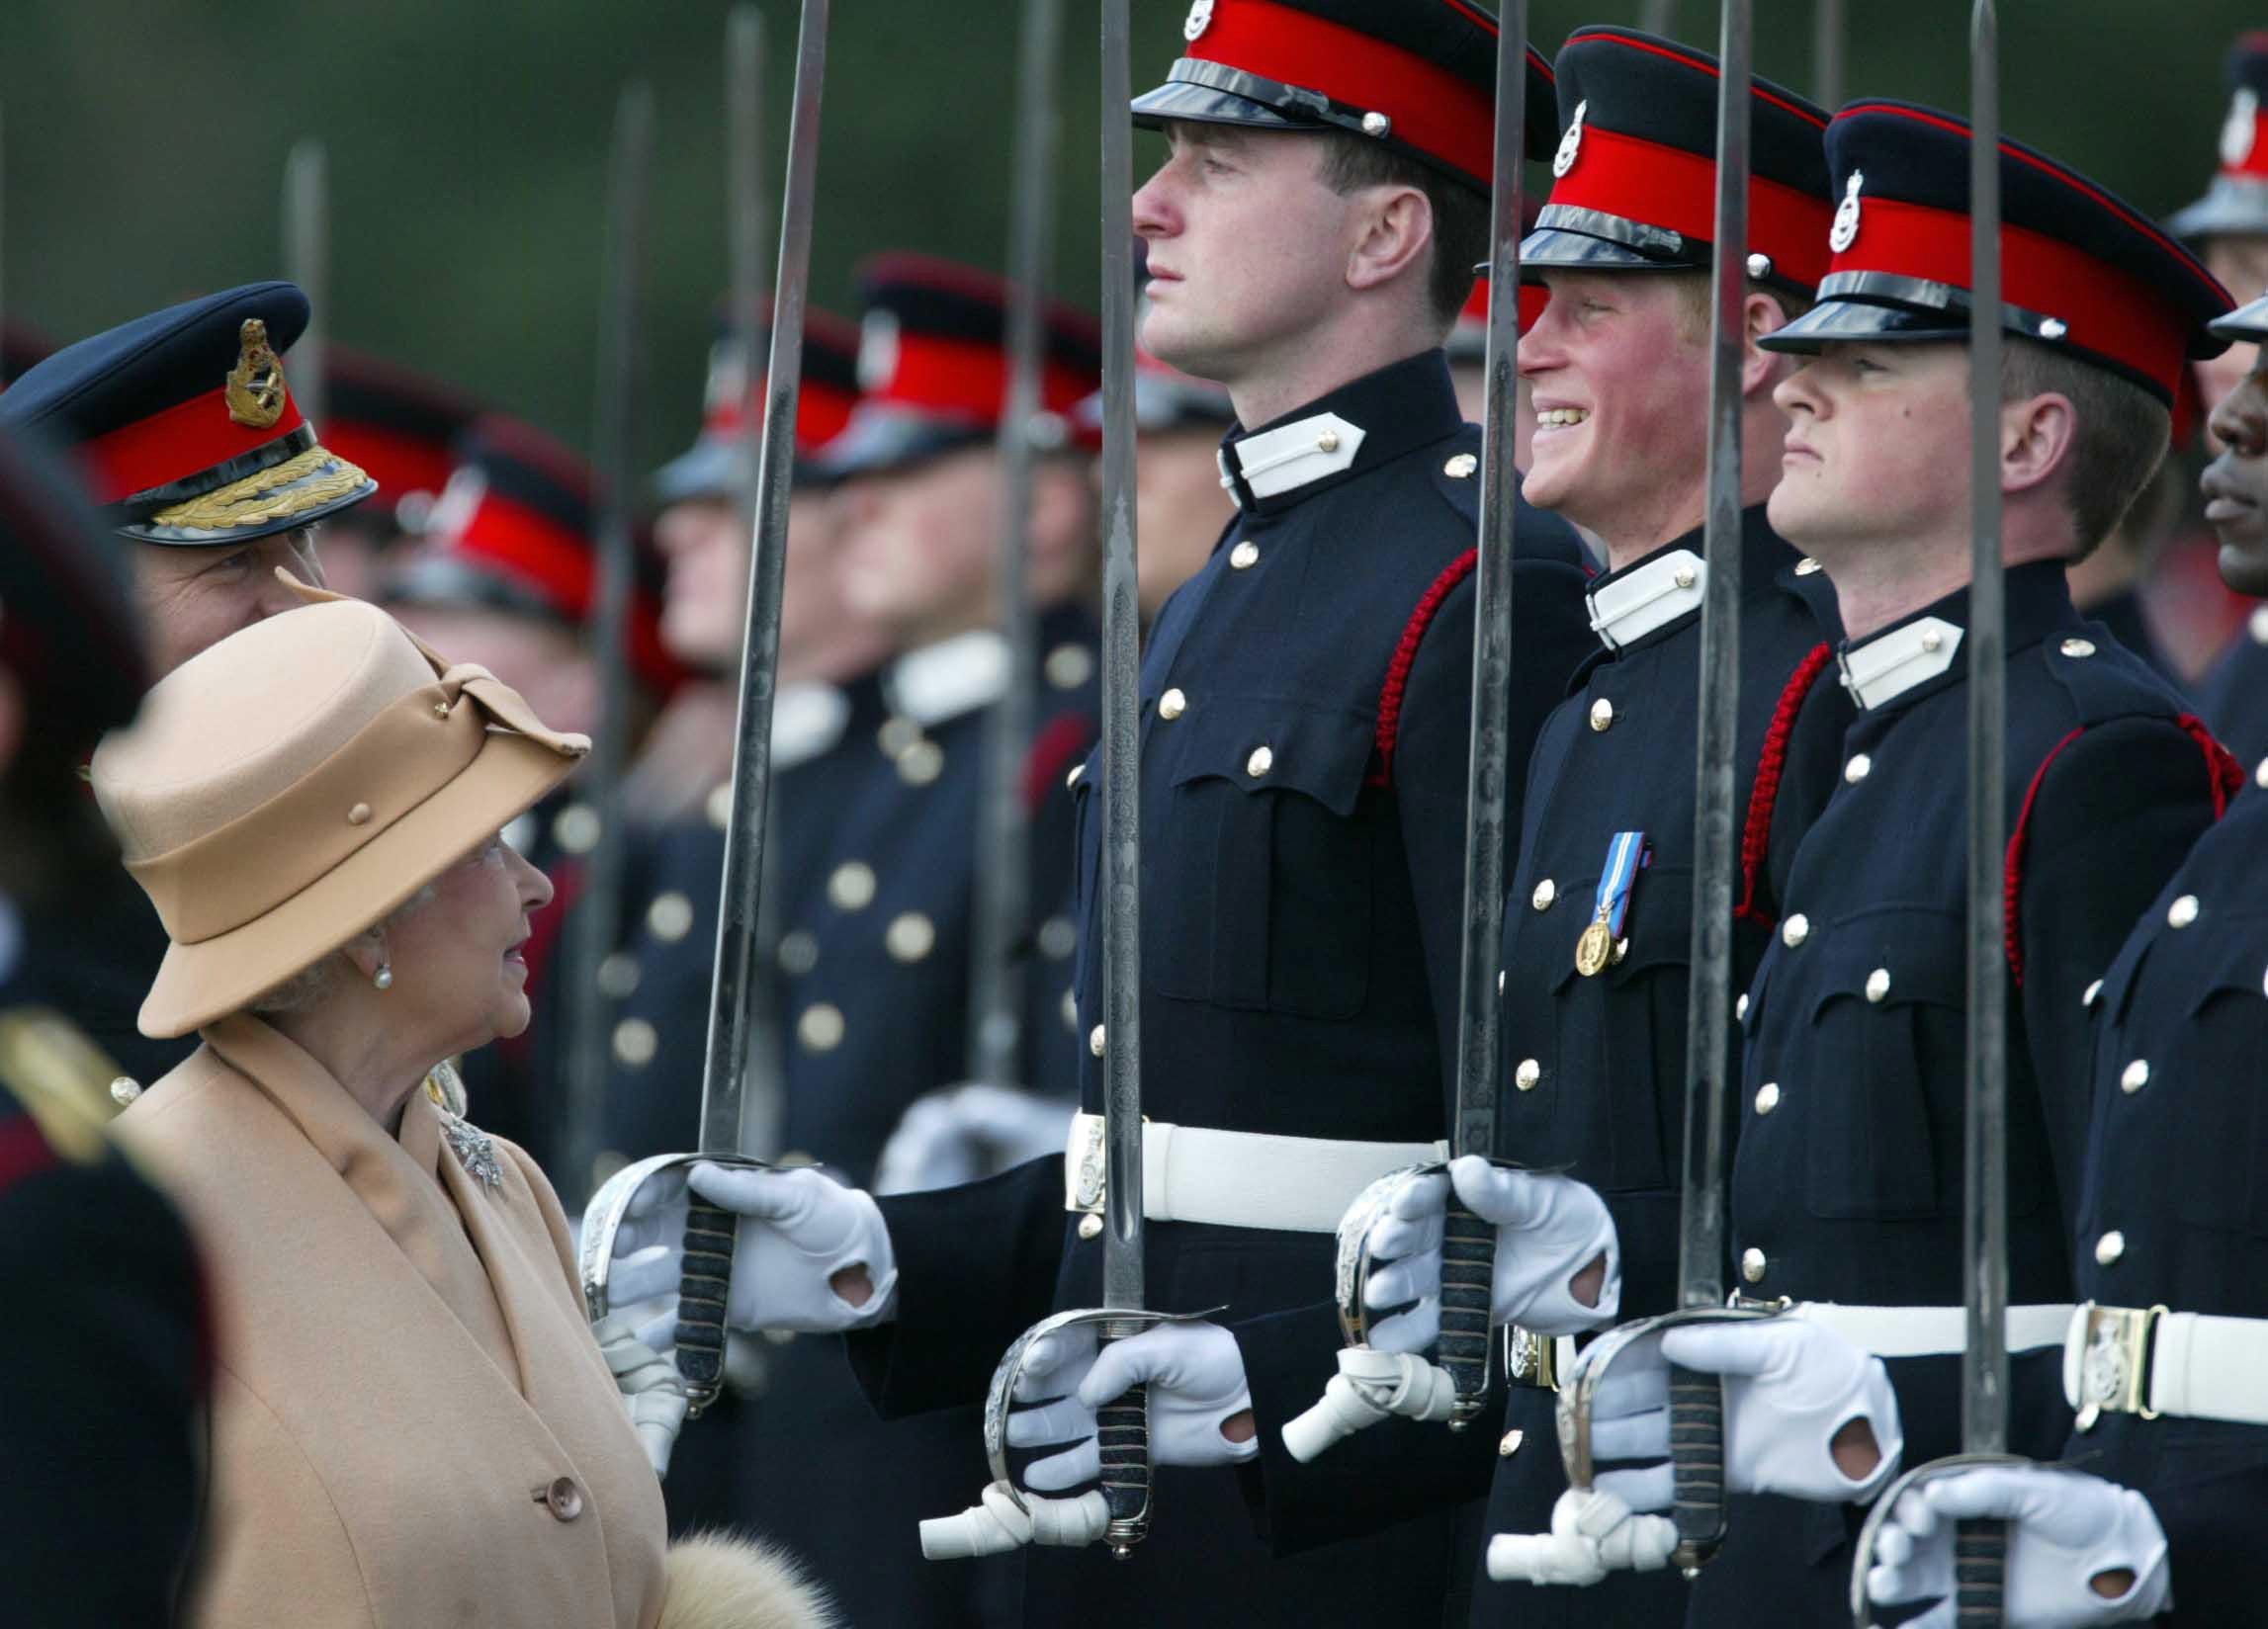 El príncipe Harry sonriendo ampliamente mientras su abuela la reina les pasa revista a él y a otros oficiales durante el Desfile del Soberano en Sandhurst en 2006 (James Vellacott/PA)